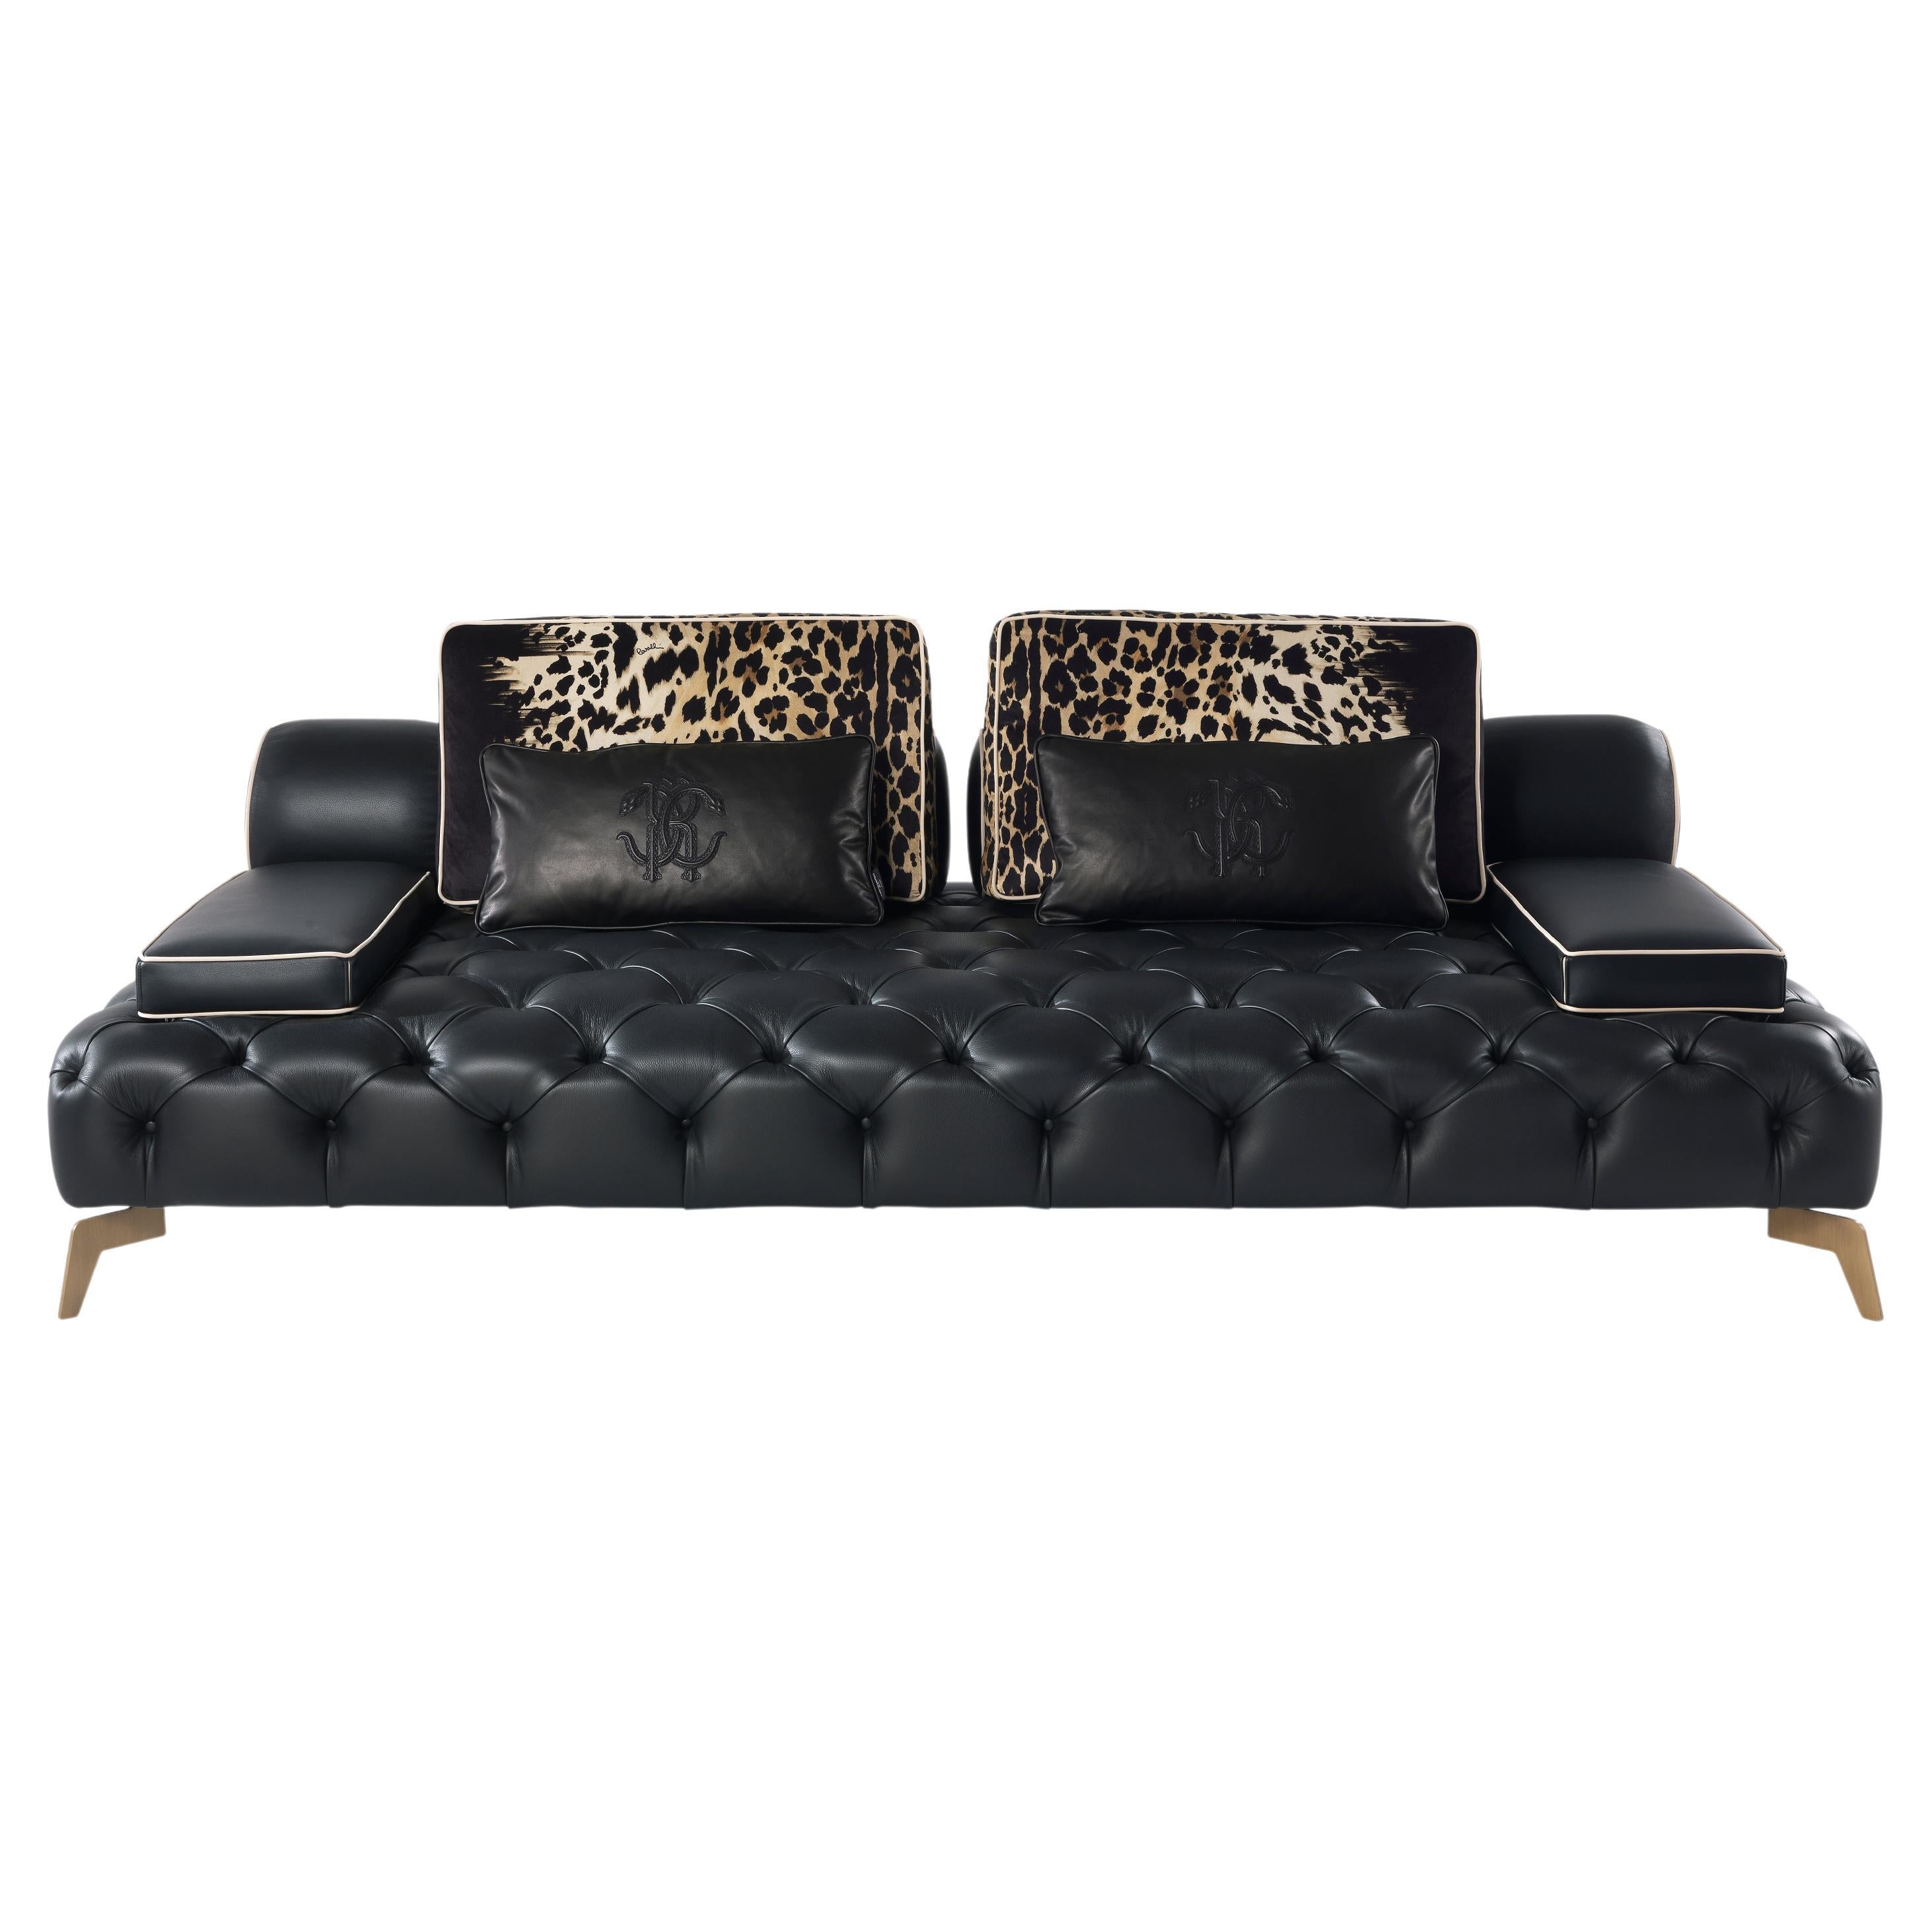 Darlington-Sofa des 21. Jahrhunderts aus schwarzem Leder von Roberto Cavalli Home Interiors